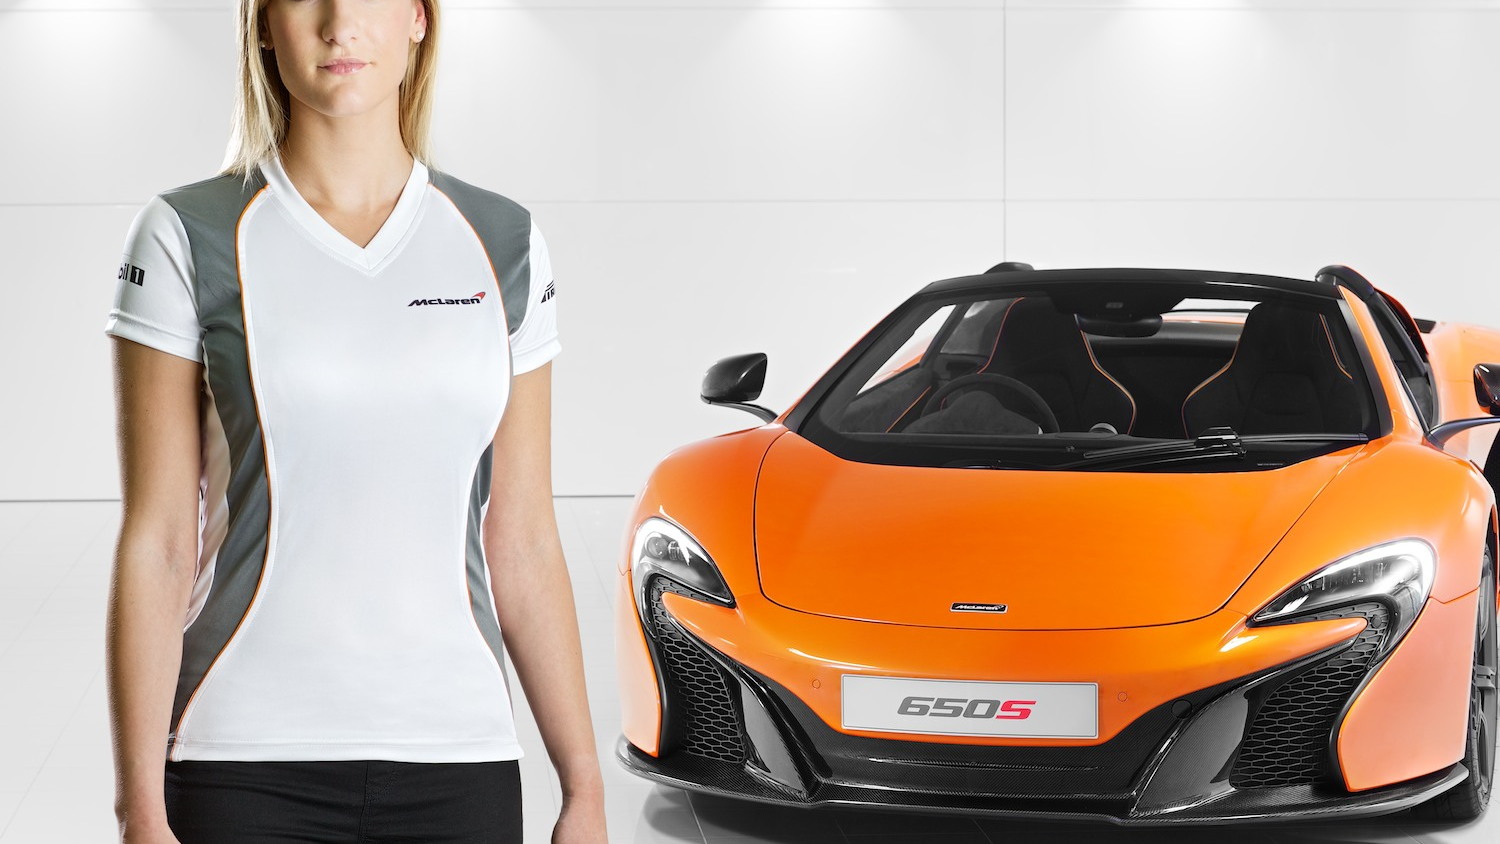 McLaren merchandise range